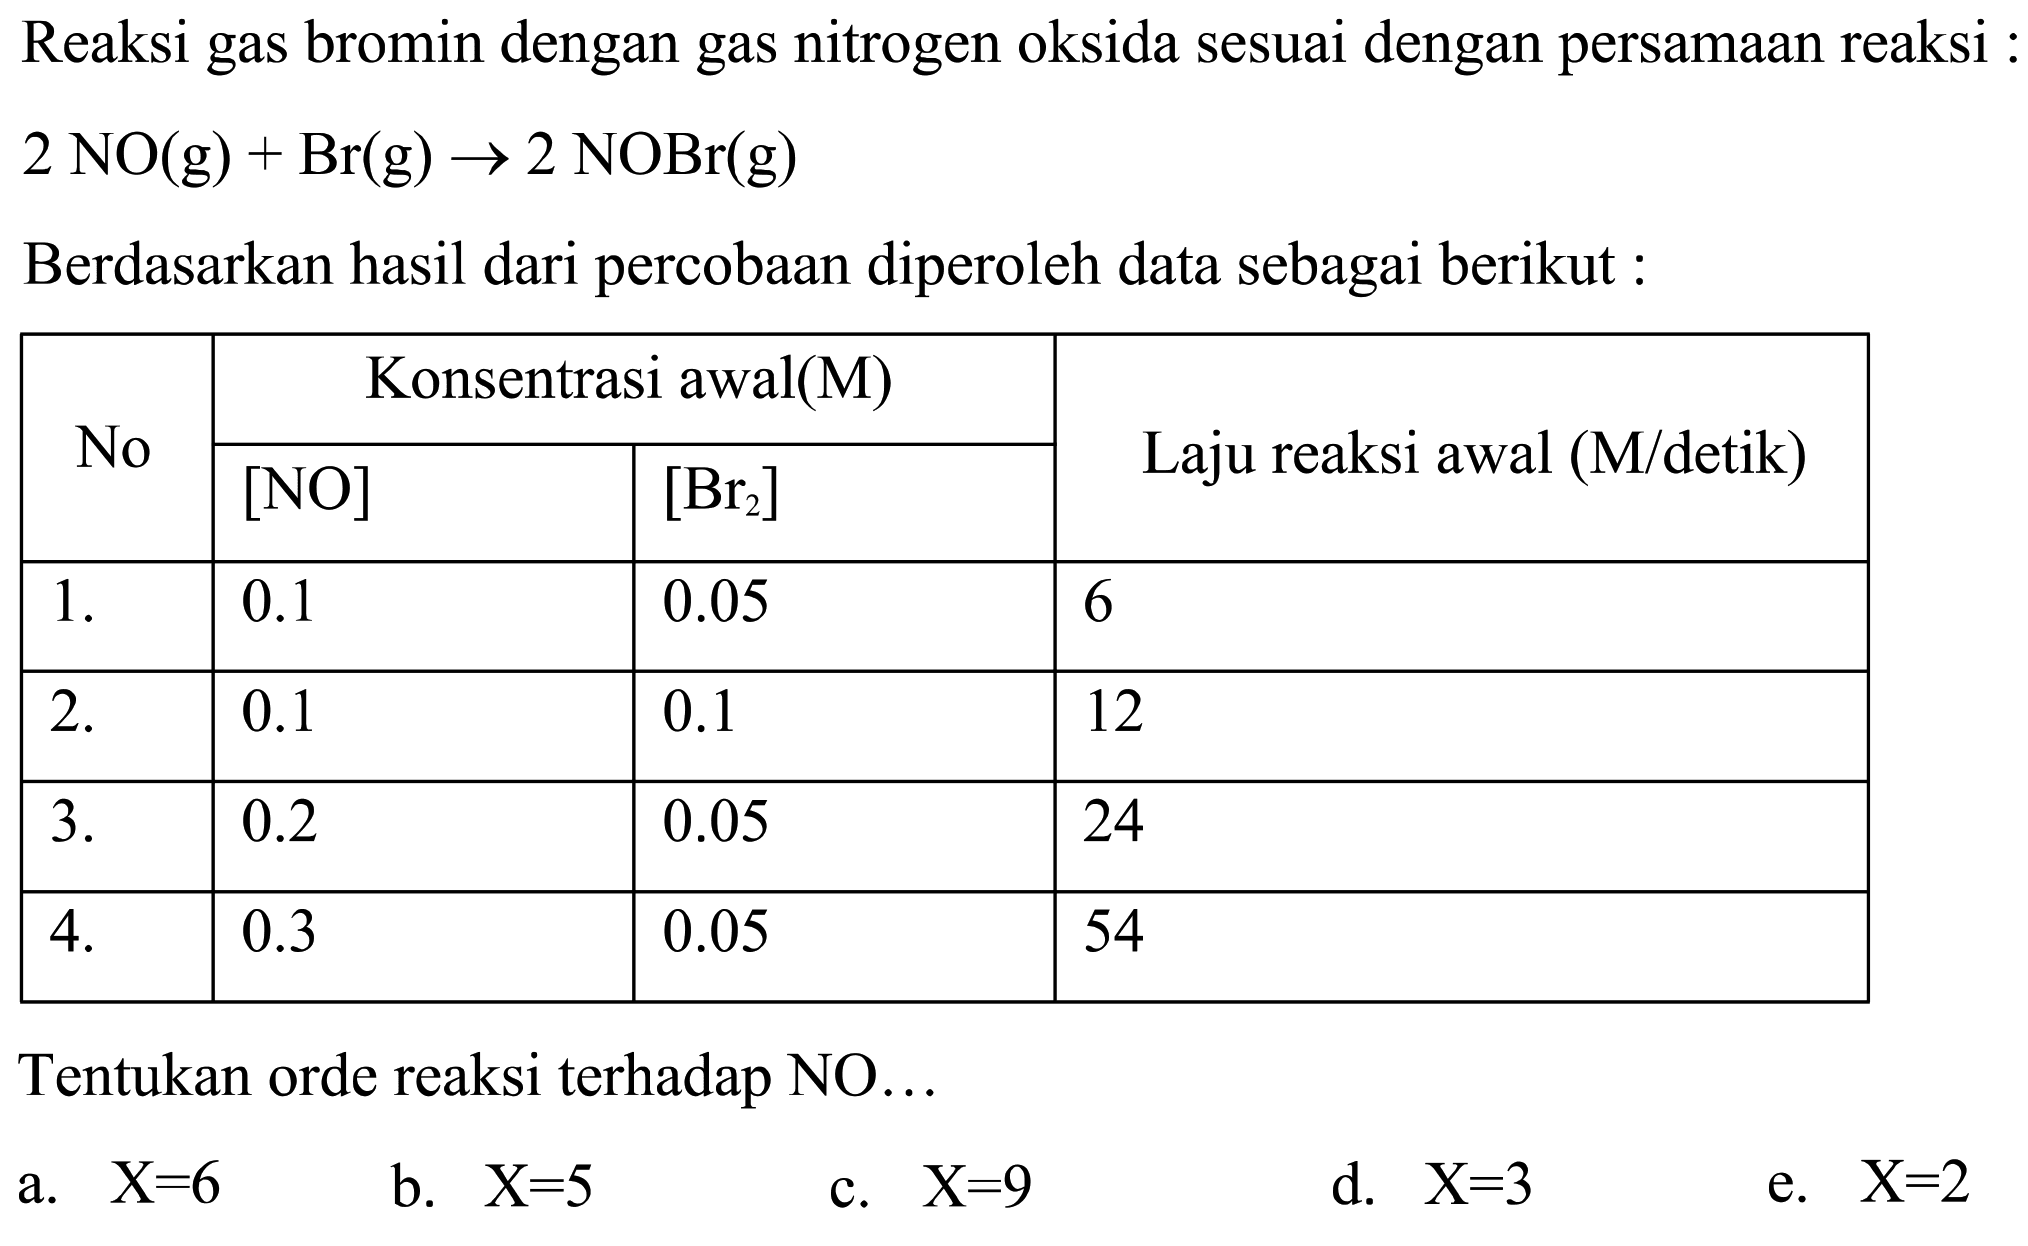 Reaksi gas bromin dengan gas nitrogen oksida sesuai dengan persamaan reaksi : 2NO(g)+Br(g) -> 2NOBr(g)Berdasarkan hasil dari percobaan diperoleh data sebagai berikut:No Konsentrasi awal(M) Laju reaksi awal (M/detik)  [NO] [Br2]1. 0.1 0.05 6 2. 0.1 0.1 12 3. 0.2 0.05 24 4. 0.3 0.05 54  Tentukan orde reaksi terhadap NO ...